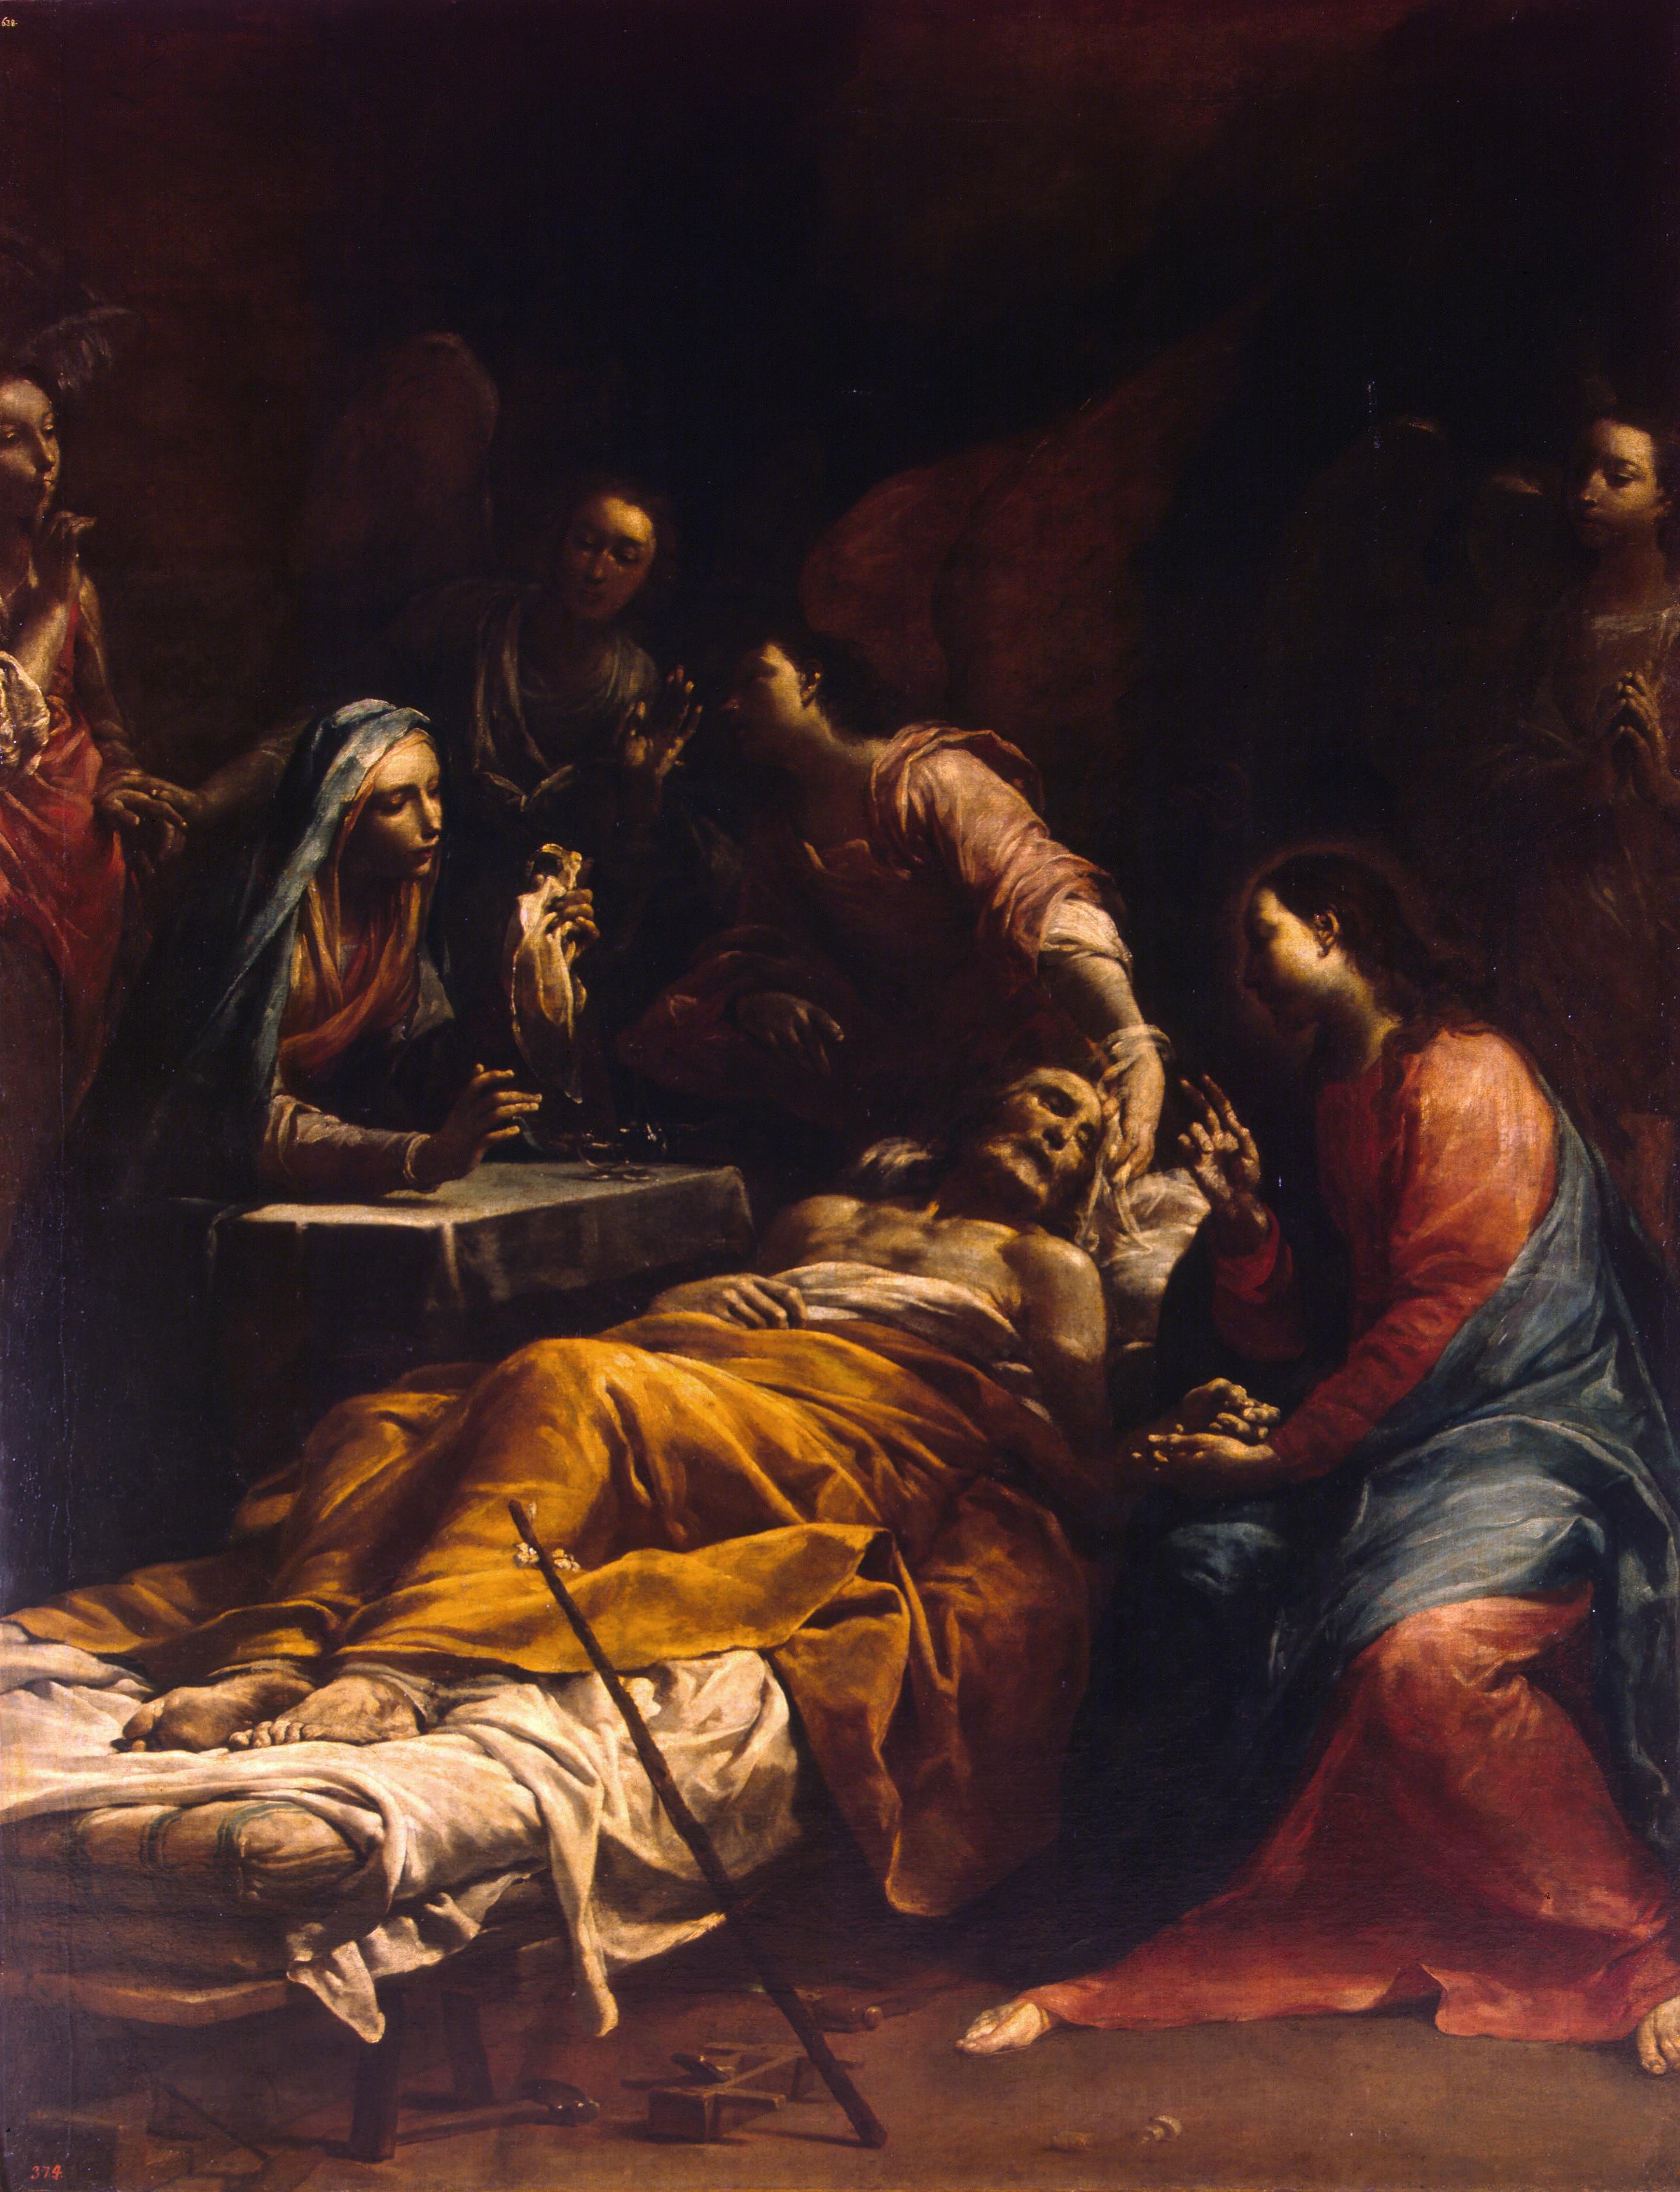 Джузеппе Мариа Креспи (Ло Спаньоло). "Смерть святого Иосифа". Около 1712. Эрмитаж, Санкт-Петербург.